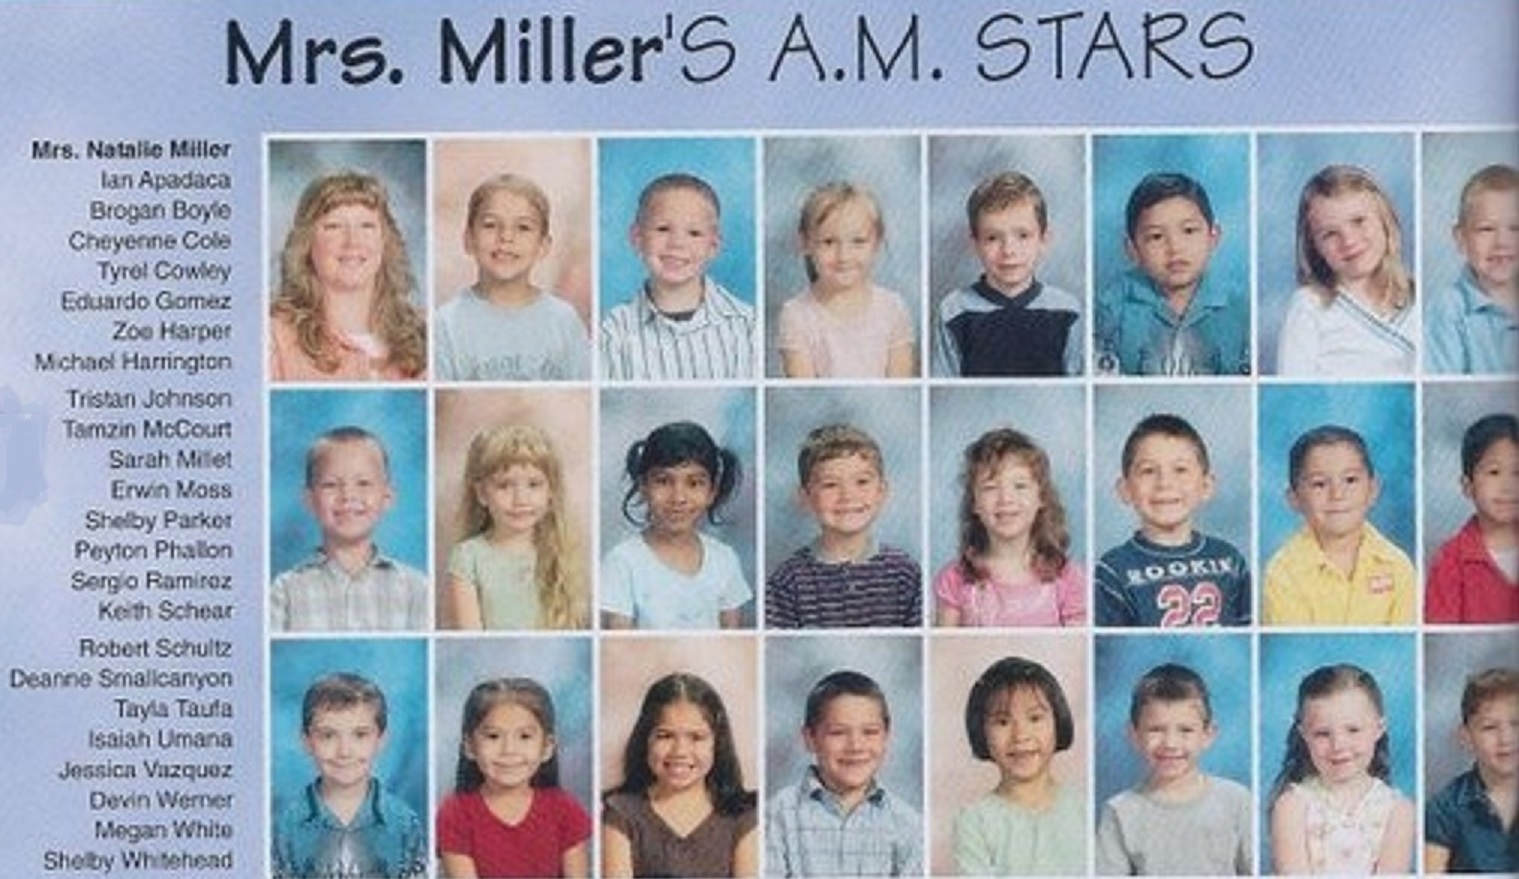 Mrs. Natalie Miller's 2006-2007 AM kindergarten class at East Elementary School